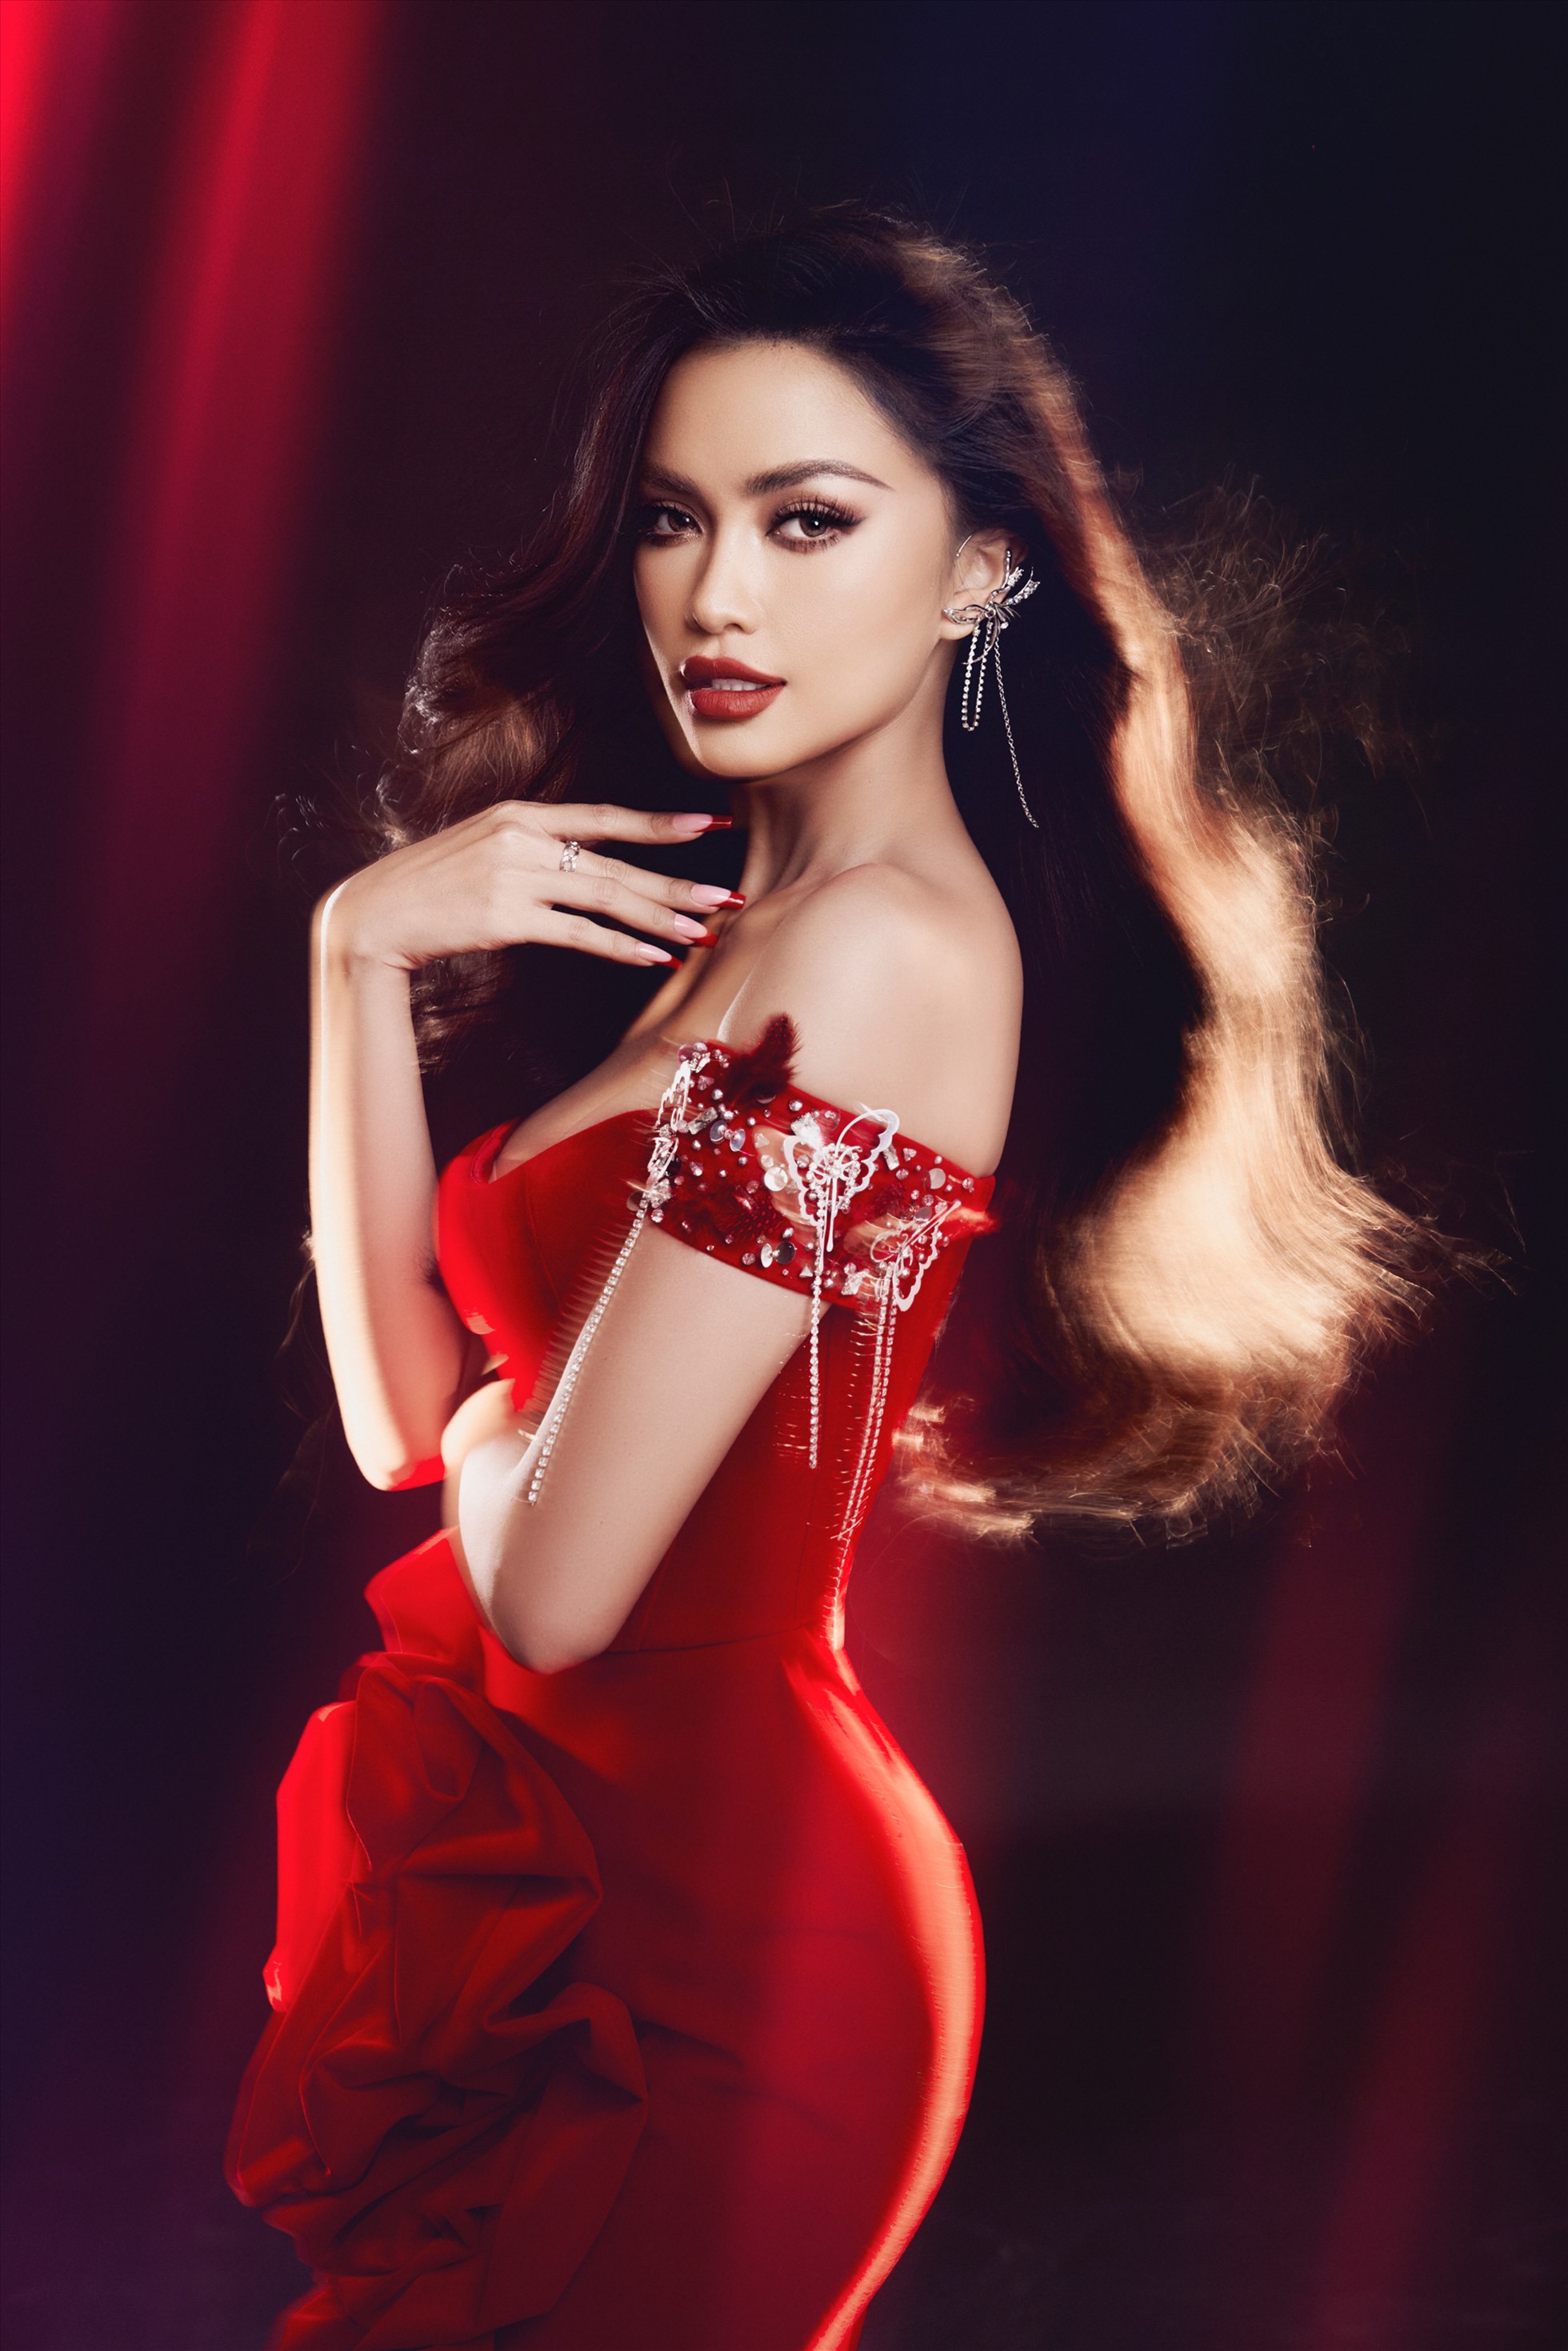 Hoa hậu Ngọc Châu rực rỡ trong bộ ảnh đón Giáng sinh